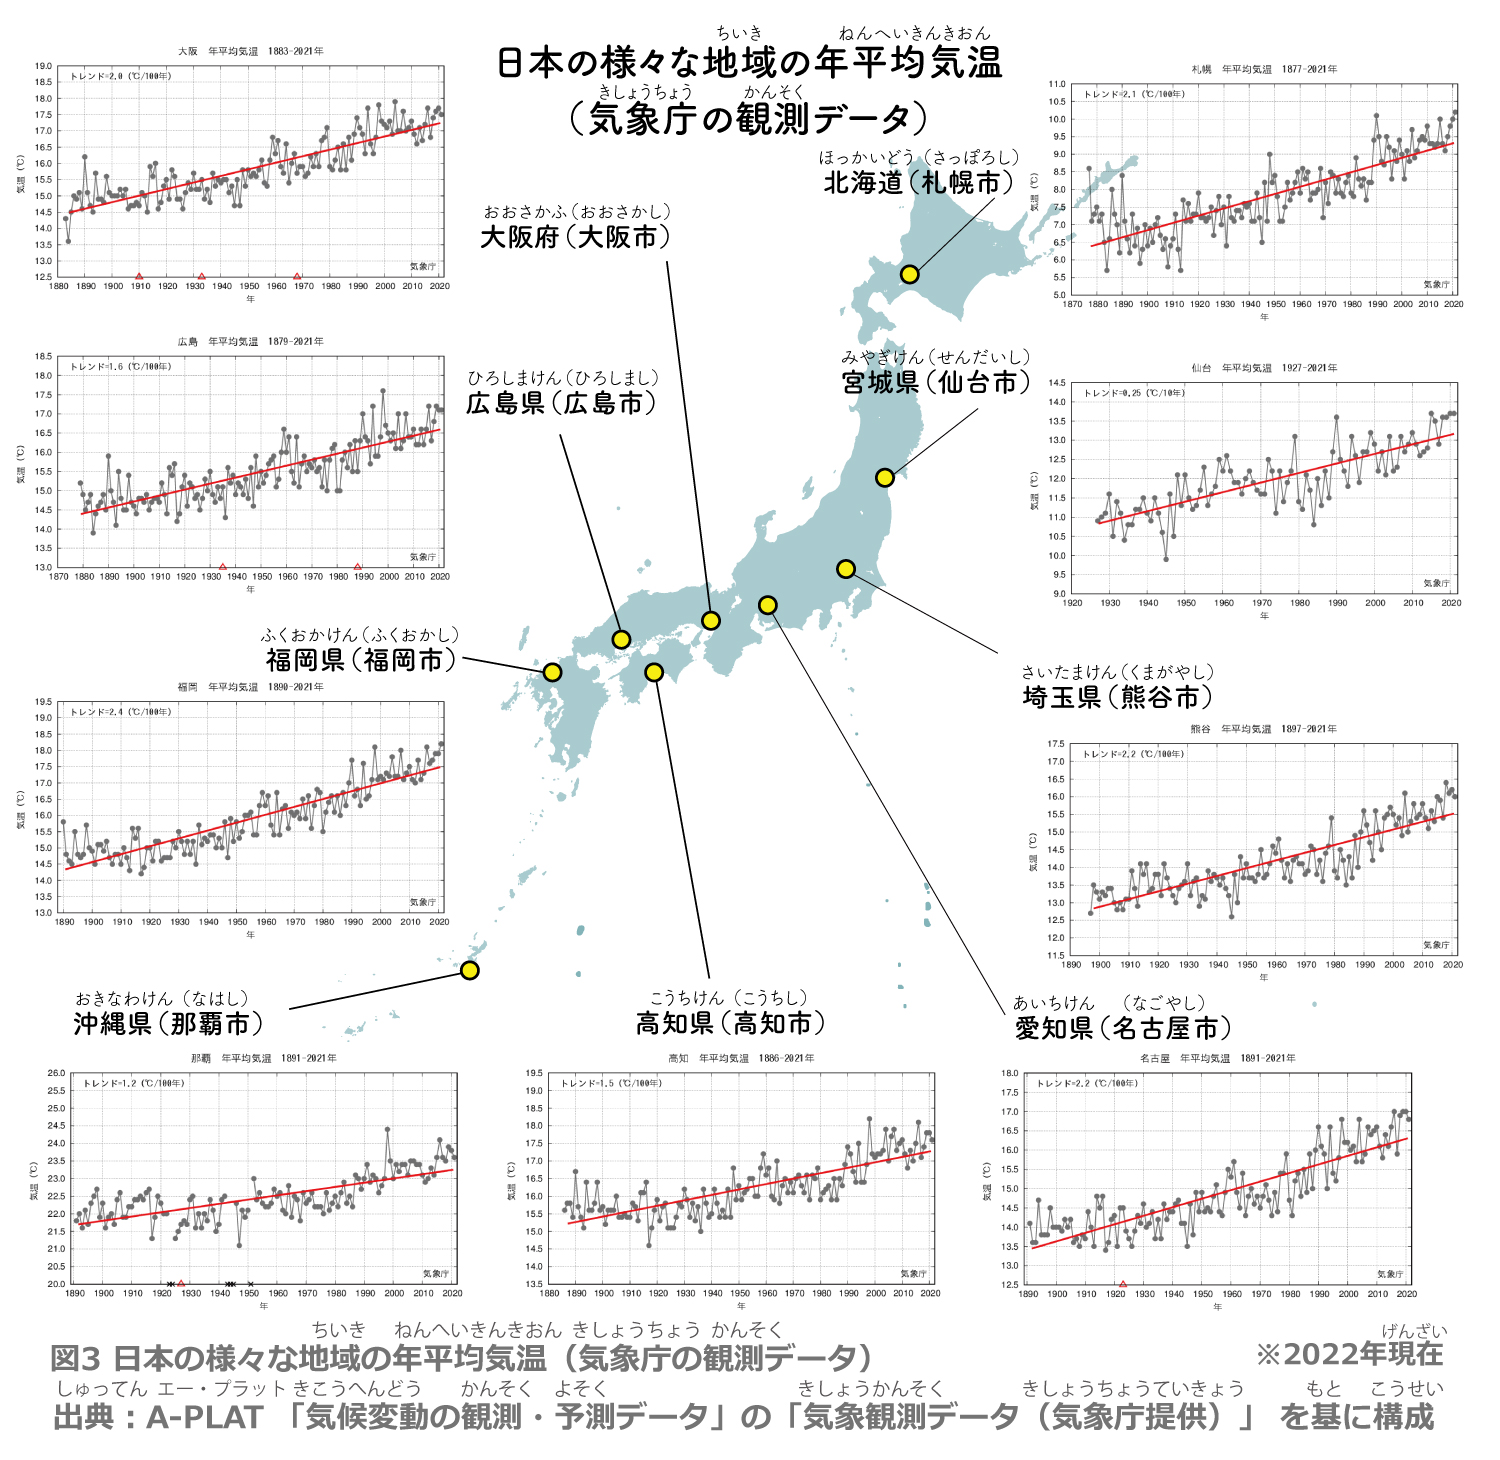 日本の様々な地域の年平均気温（気象庁の観測データ）-2010年平均値との差